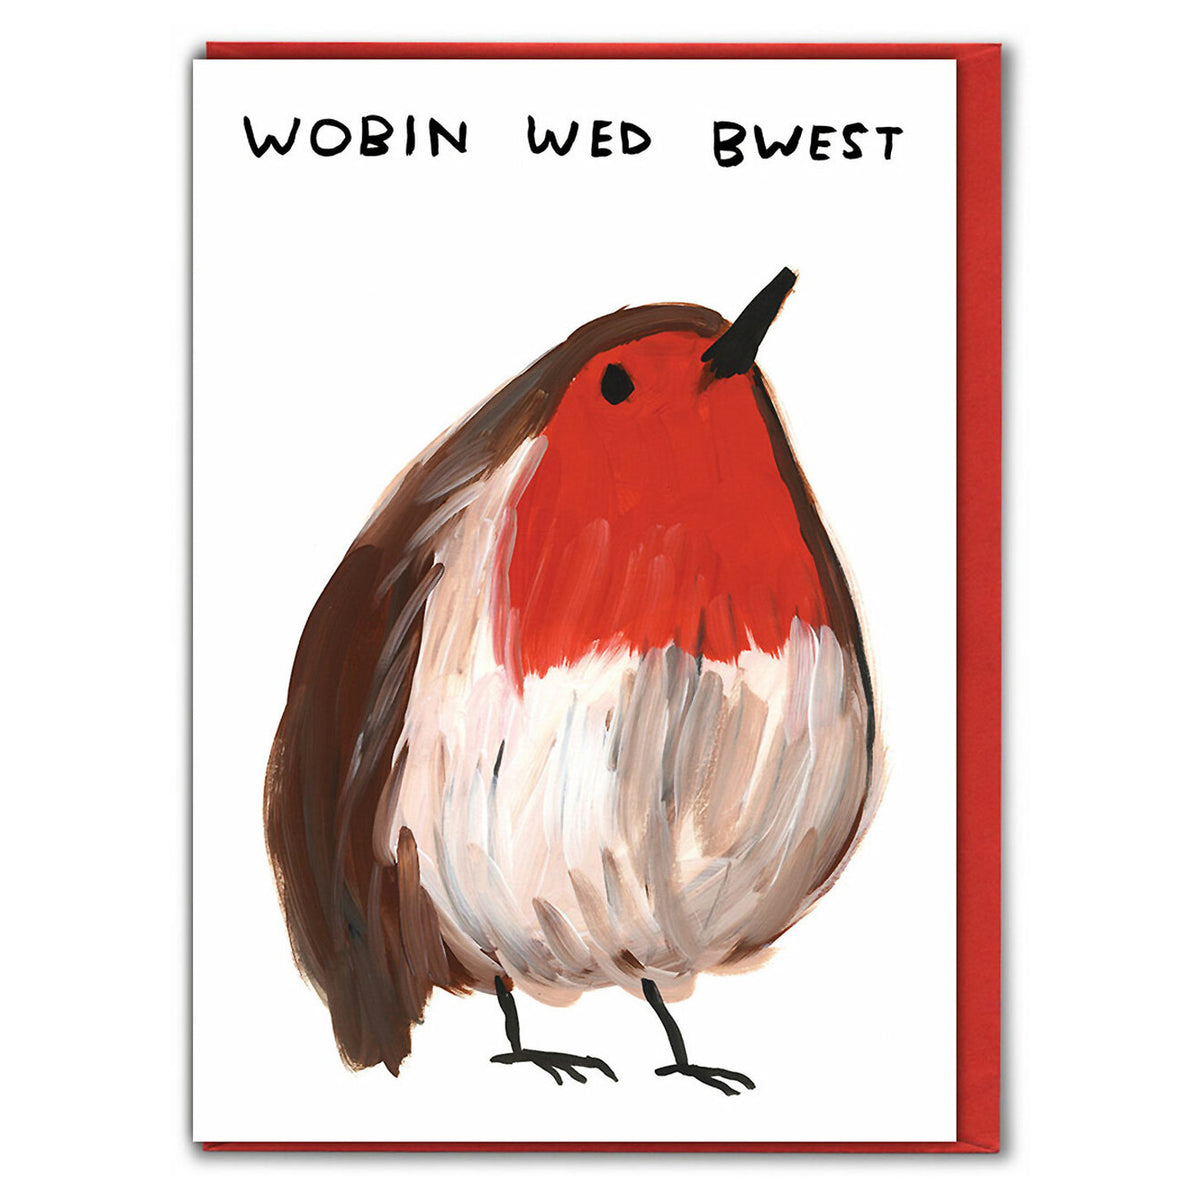 David Shrigley Wobin Wed Bwest Christmas Card